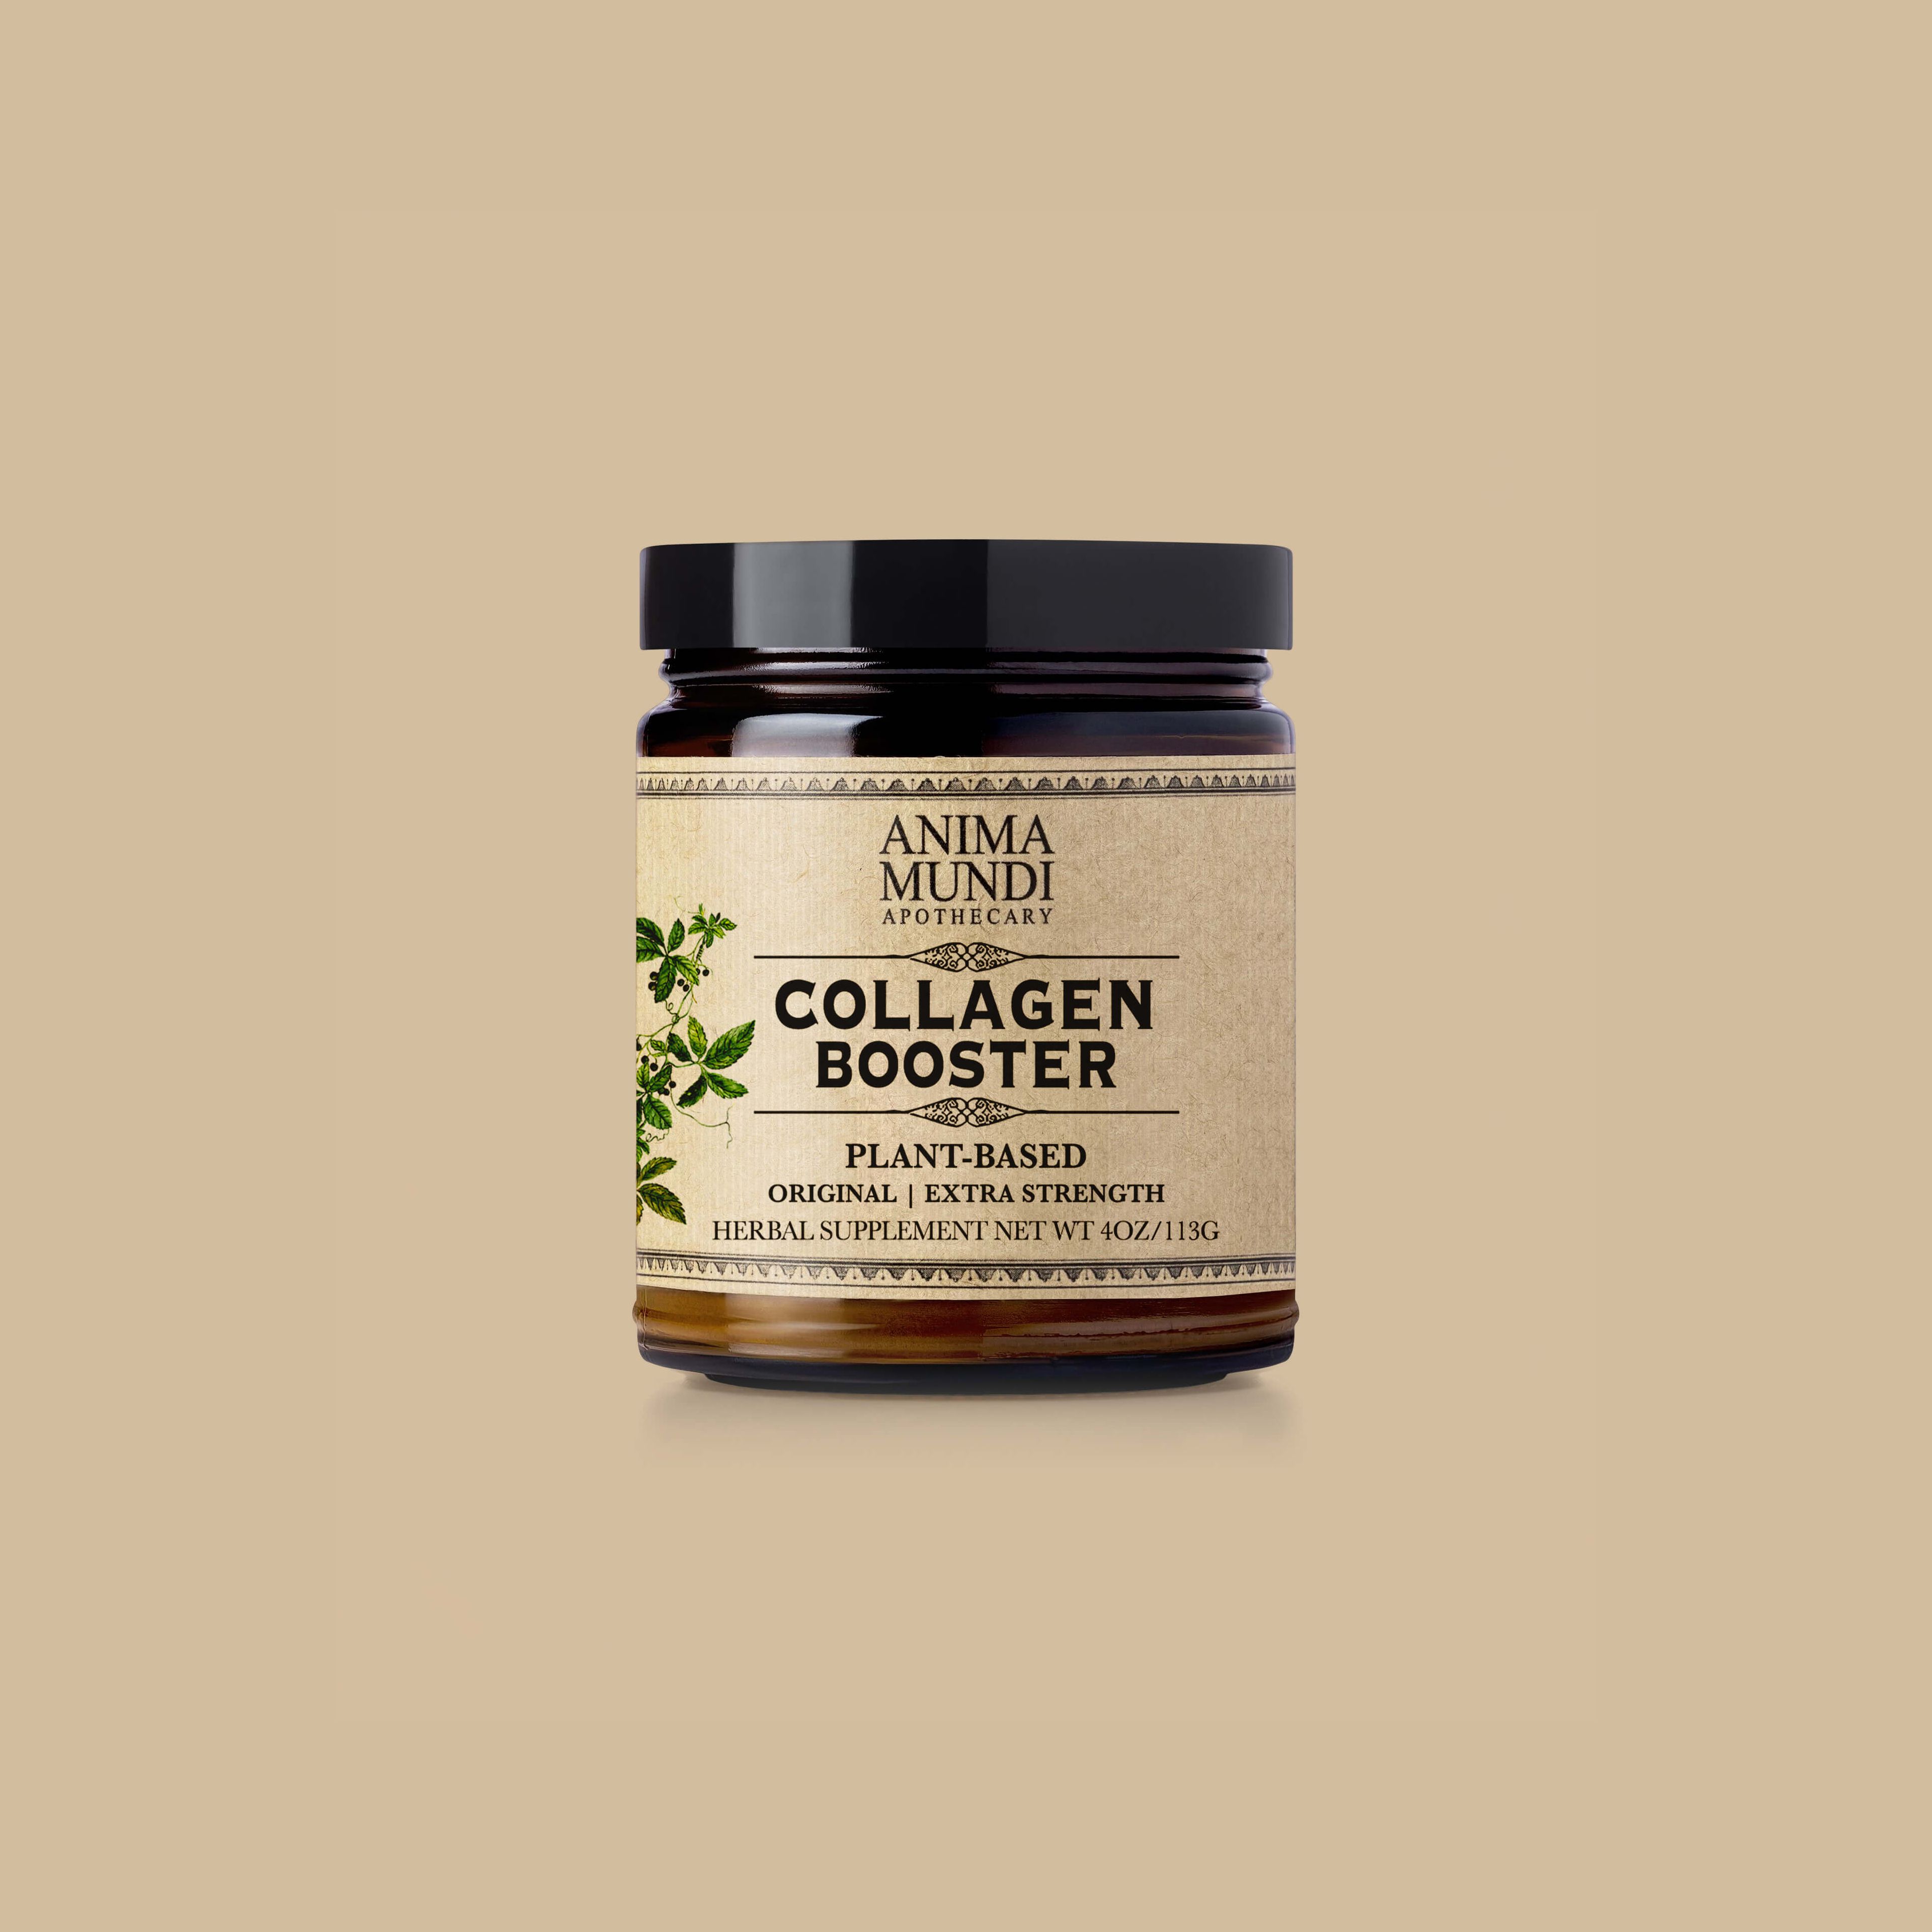 COLLAGEN BOOSTER Powder | Original Flavor